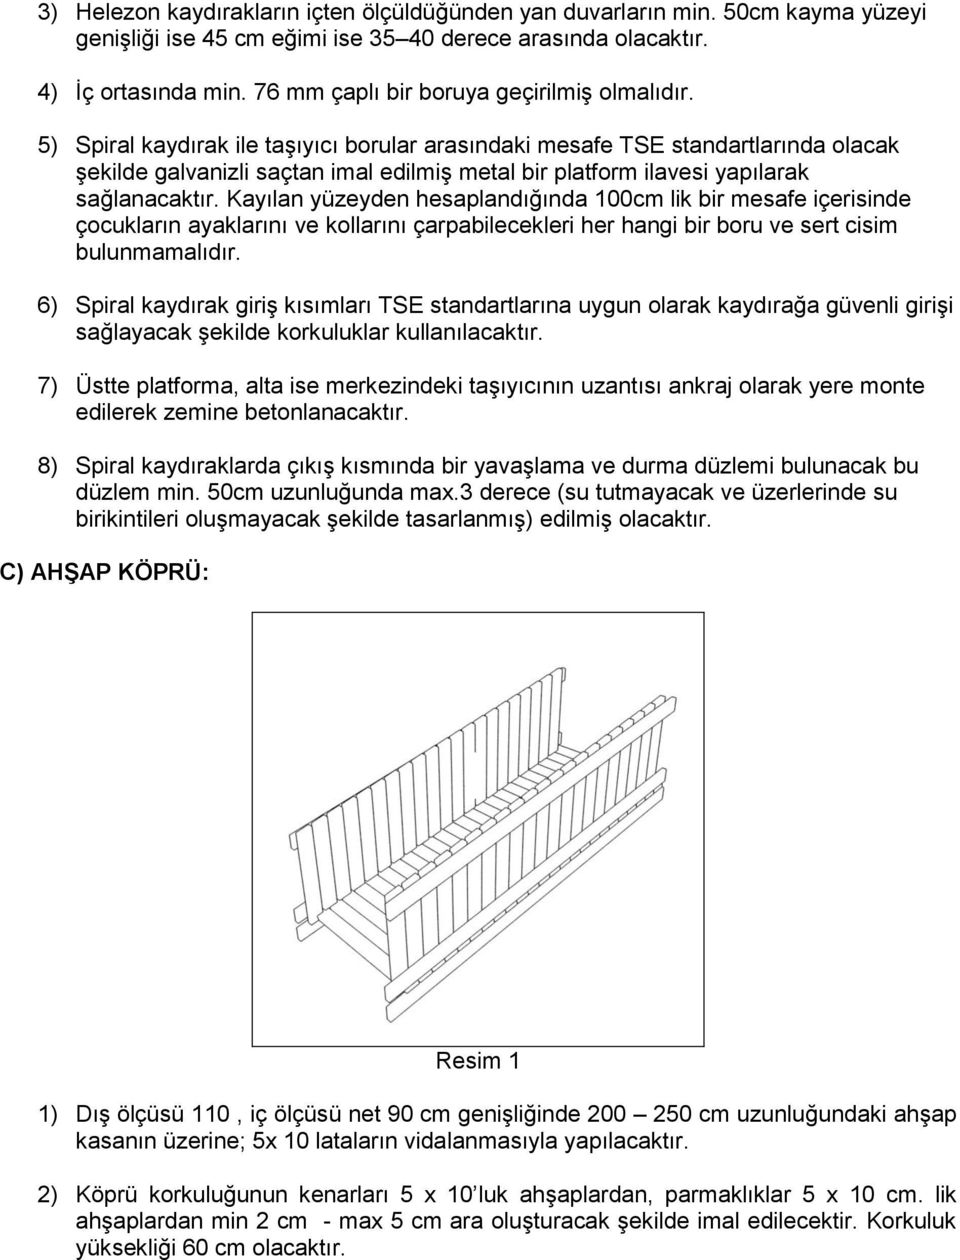 5) Spiral kaydırak ile taşıyıcı borular arasındaki mesafe TSE standartlarında olacak şekilde galvanizli saçtan imal edilmiş metal bir platform ilavesi yapılarak sağlanacaktır.